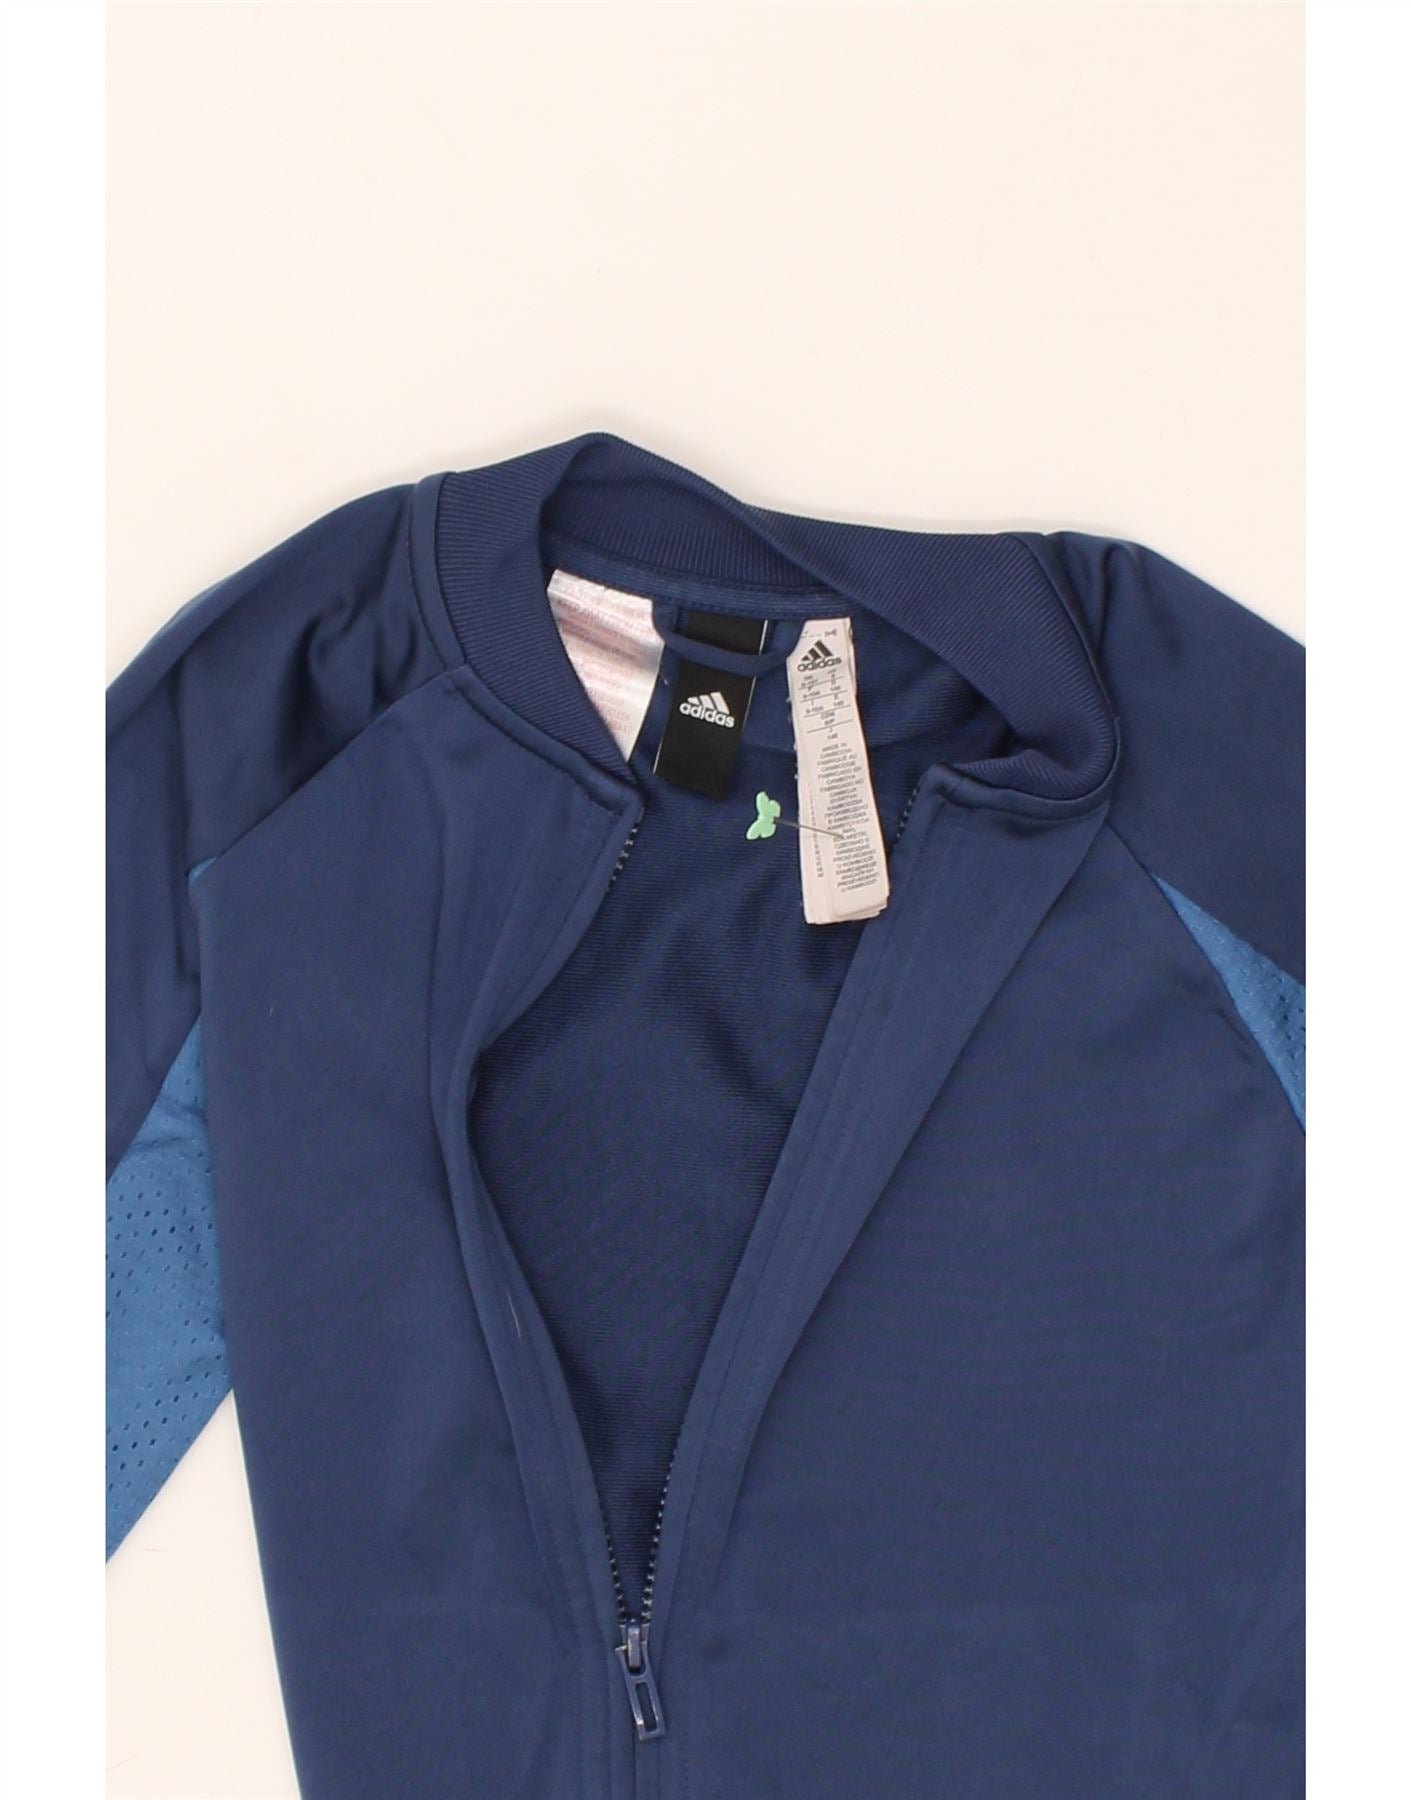 ADIDAS Veste de Survêtement Graphique Garçon 9-10 Ans Bleu Marine Polyester | Vintage Adidas | Économie | Adidas d'occasion | Vêtements d'occasion | Messine Hembry